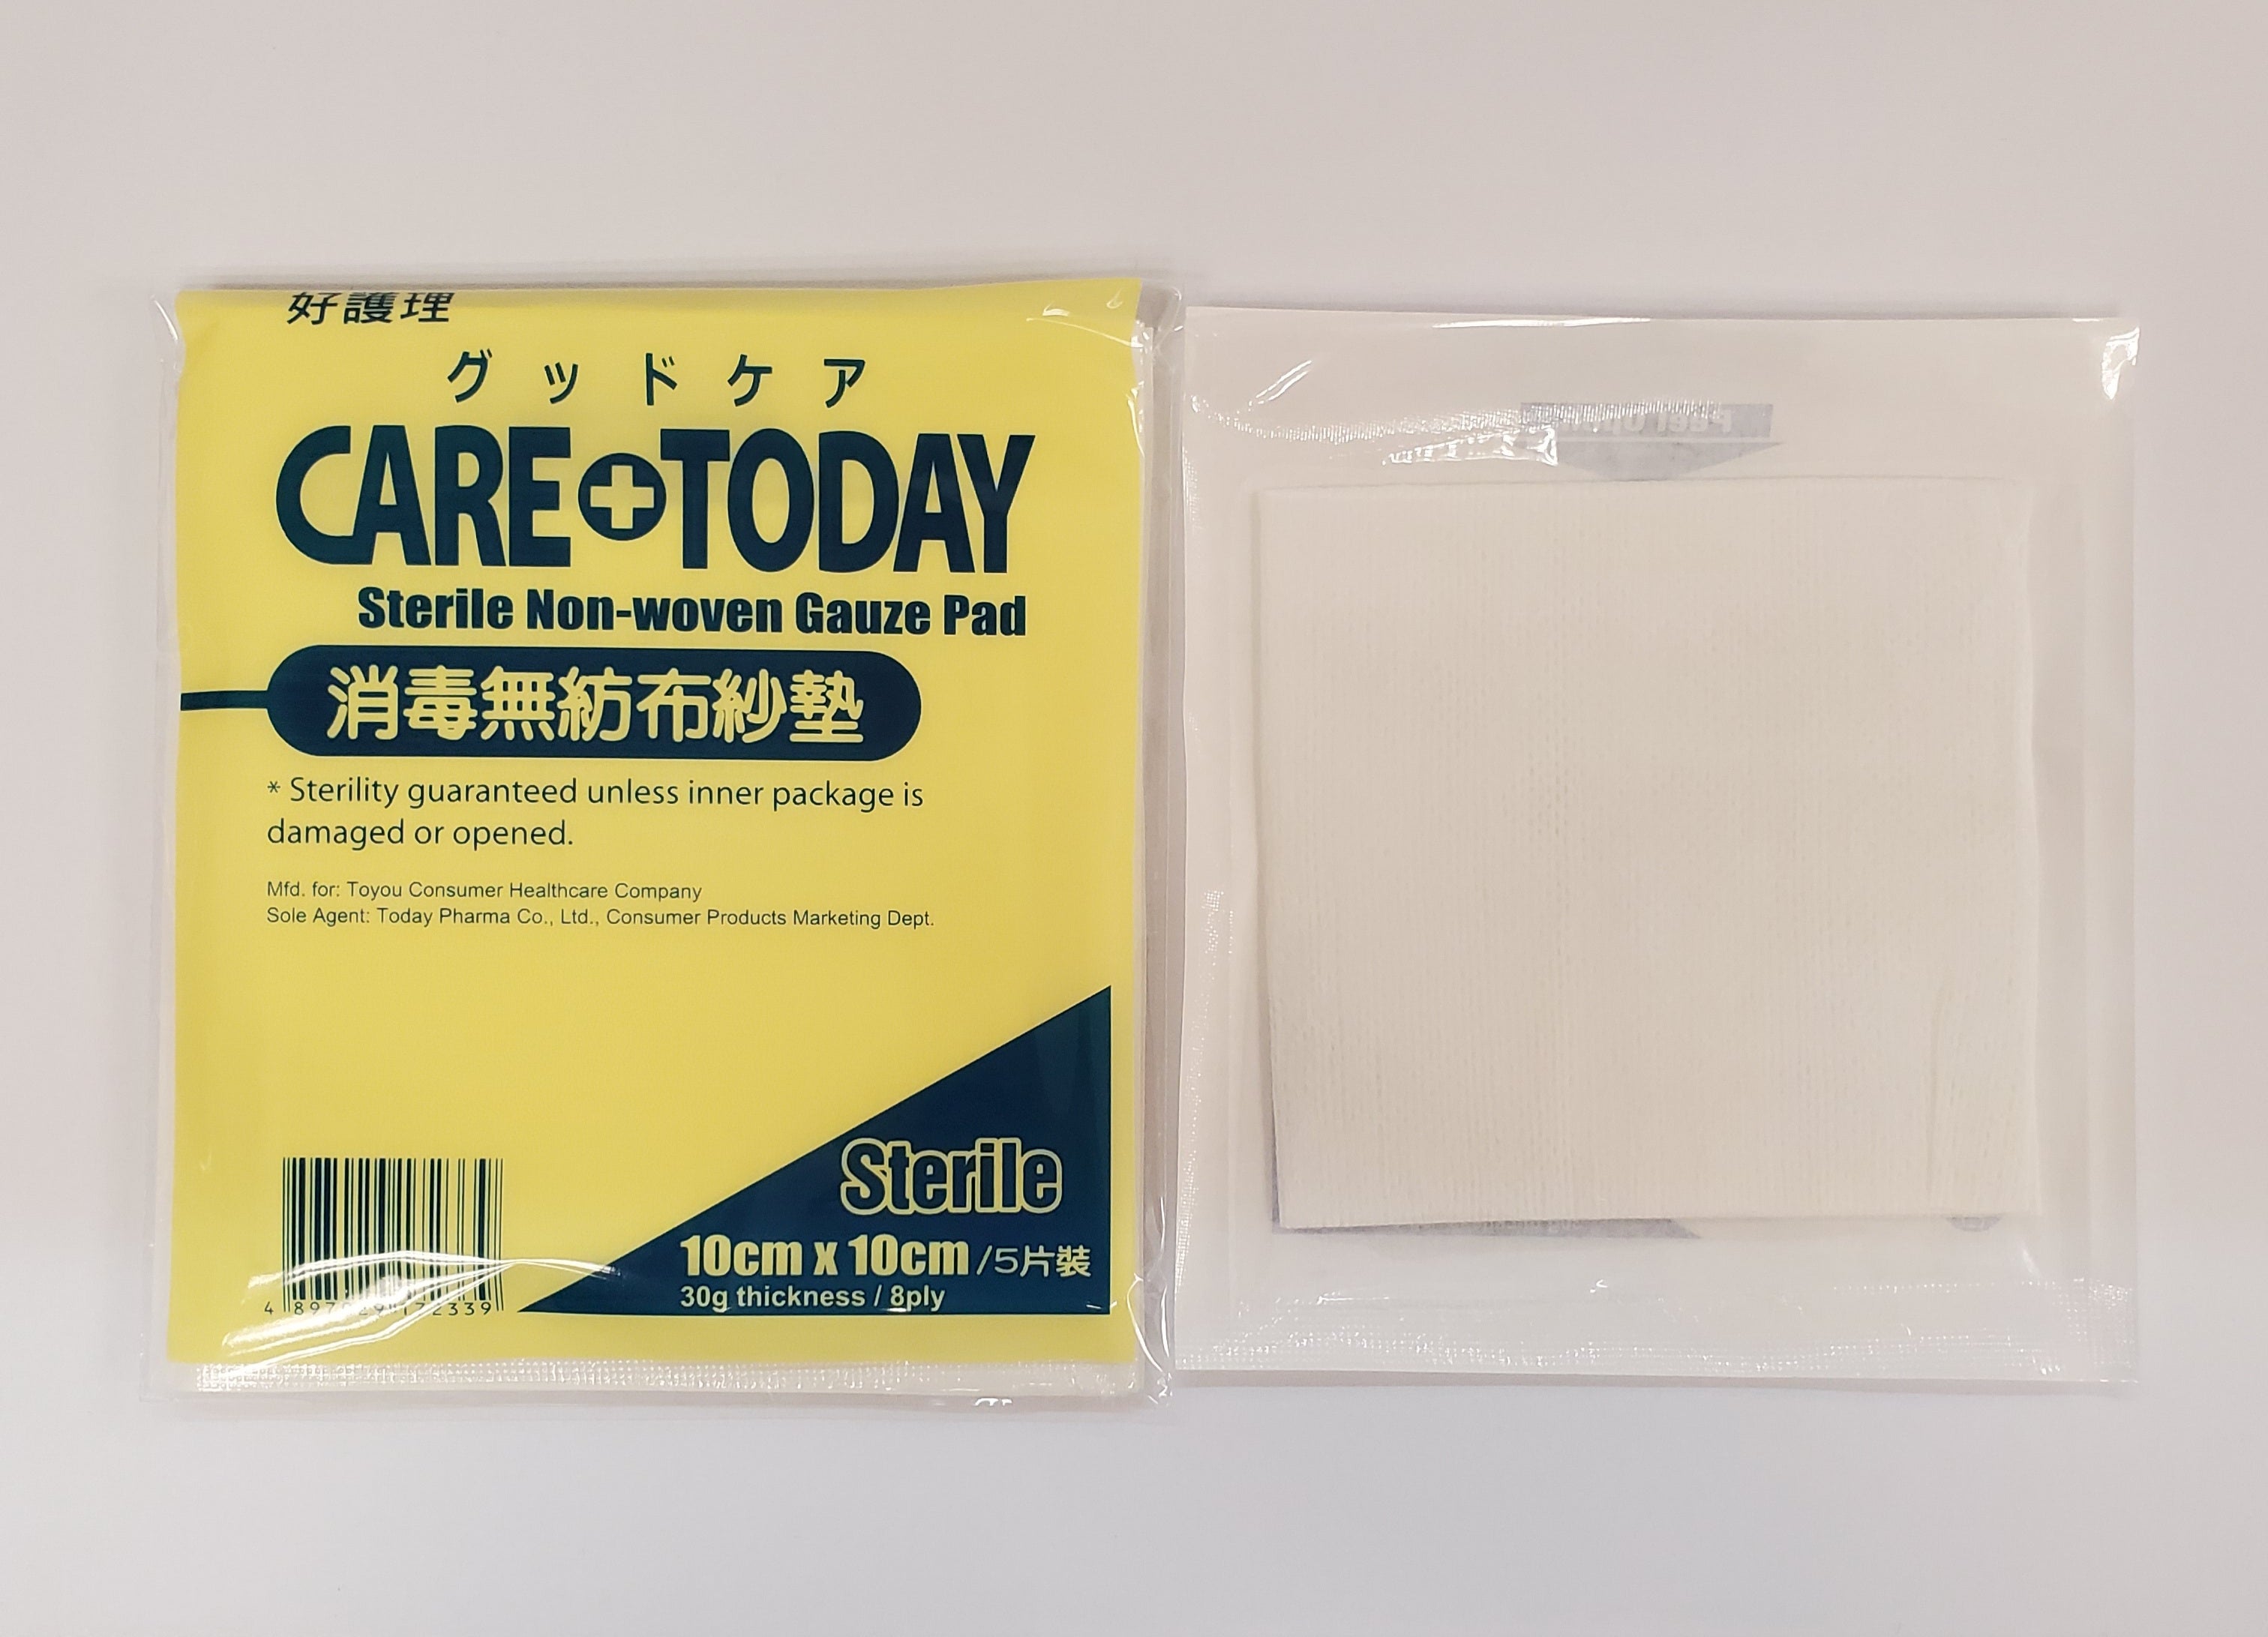 CareToday Sterile Non-Woven Gauze Pad